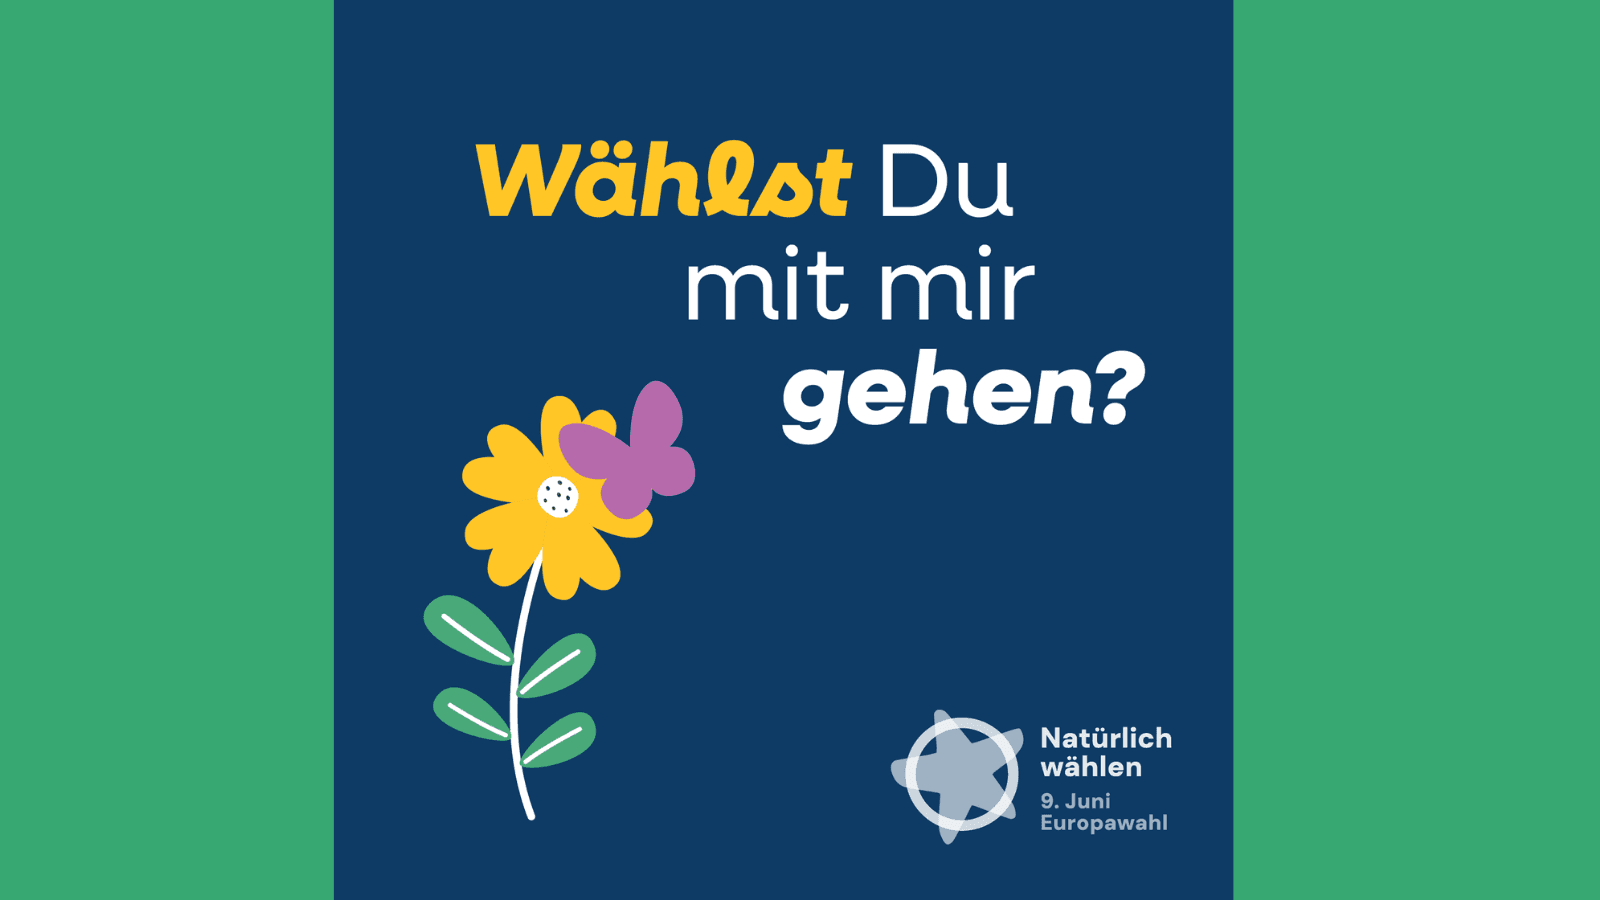 Sharepic Europawahlkampagne der Umweltverbände #Natürlichwählen: "Wählst du mit mir gehen?" (blauer Hintergrund, grafische Darstellung Blume und Schmetterling sowie Kampagnenlogo)